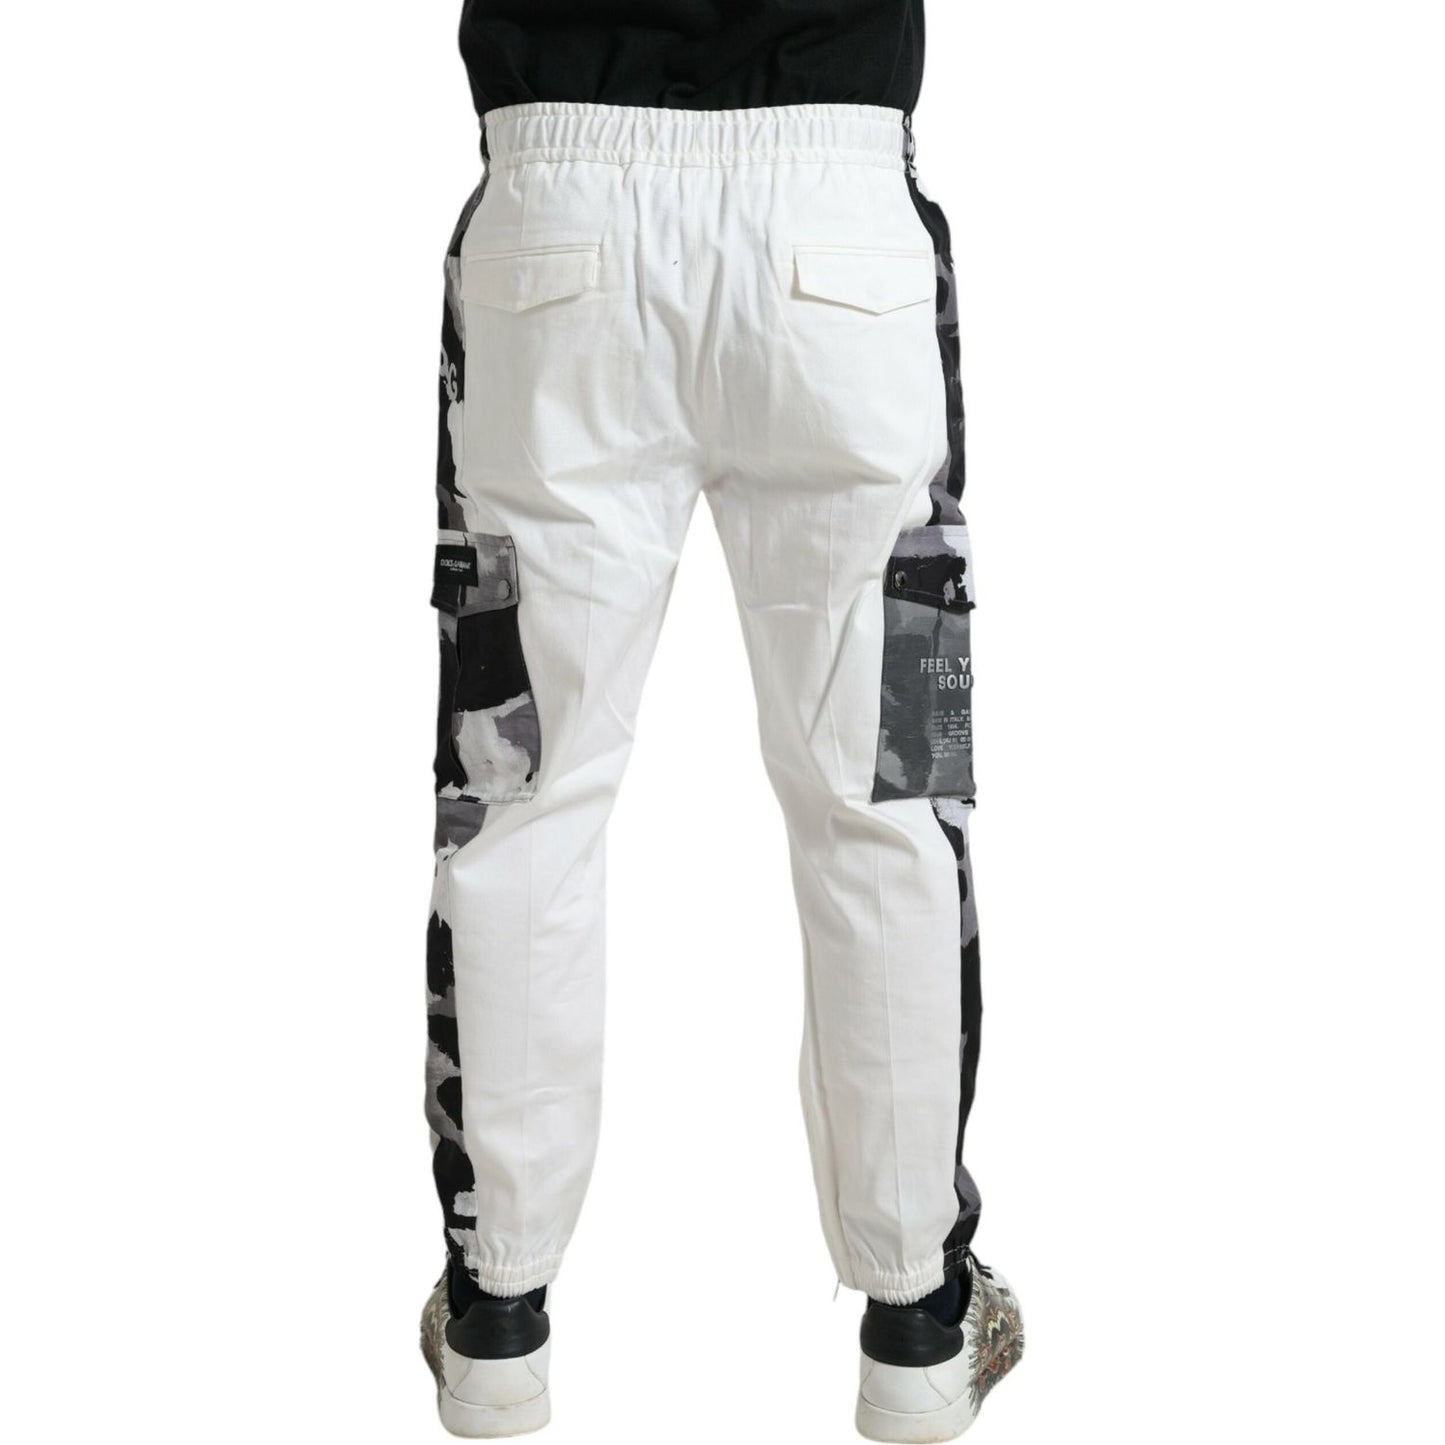 Dolce & Gabbana Elegant White Cotton Blend Jogger Pants white-cotton-blend-jogger-men-sweatpants-pants 465A0726-BG-scaled-e3594655-124.jpg